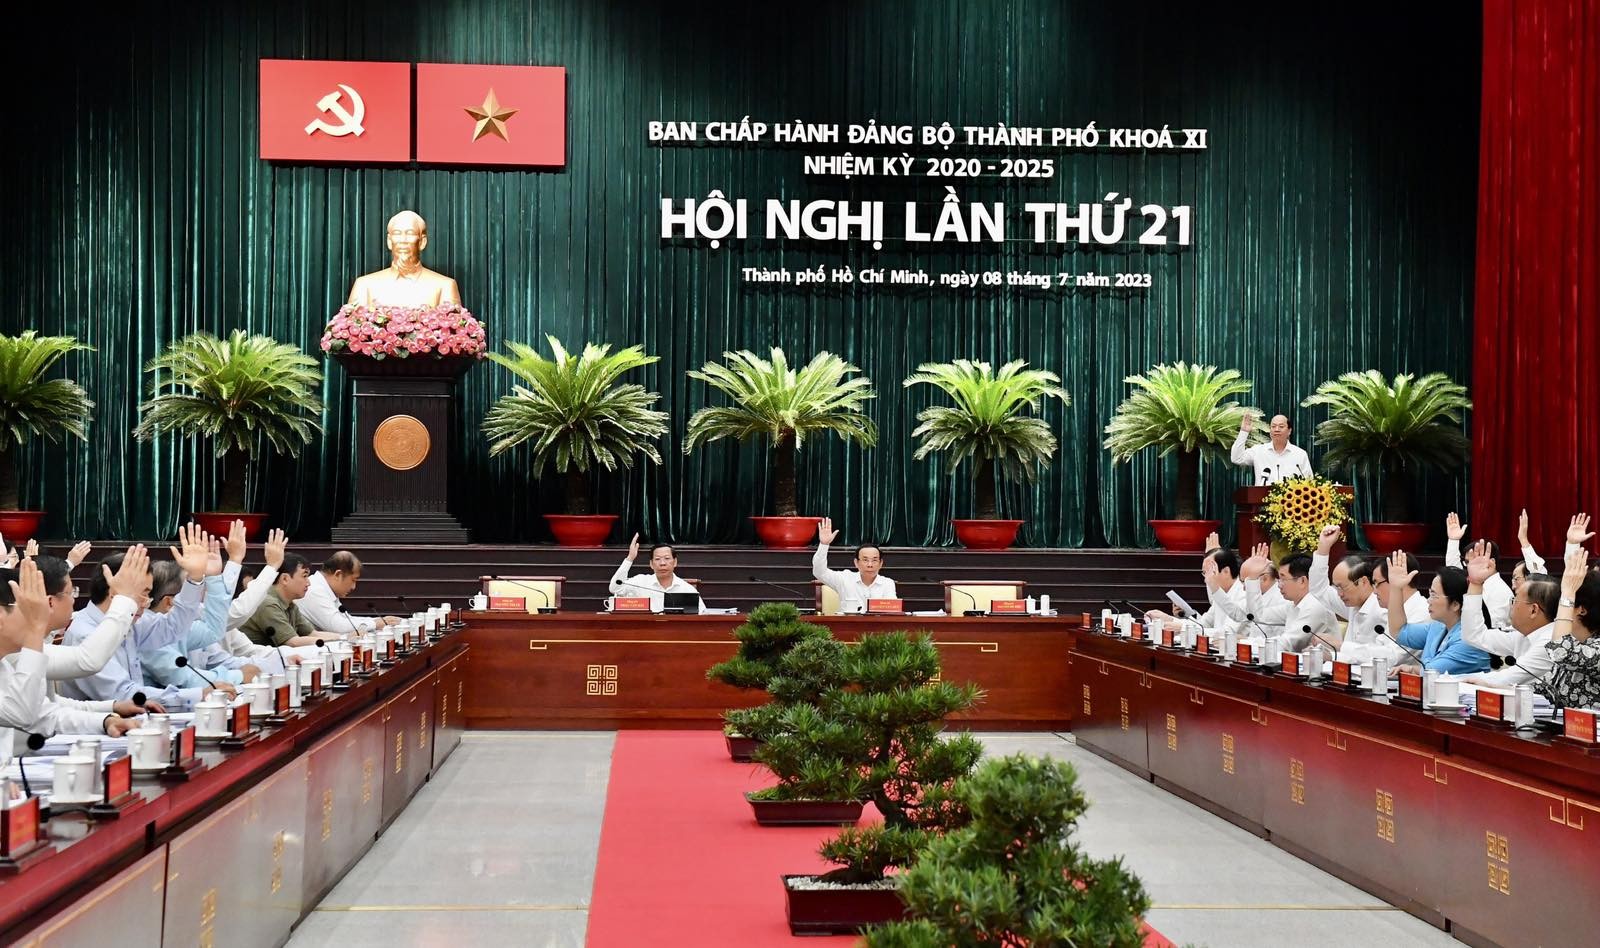 Bí thư TP.HCM Nguyễn Văn Nên: Tạo đột phá  từ Nghị quyết 98 - Ảnh 1.